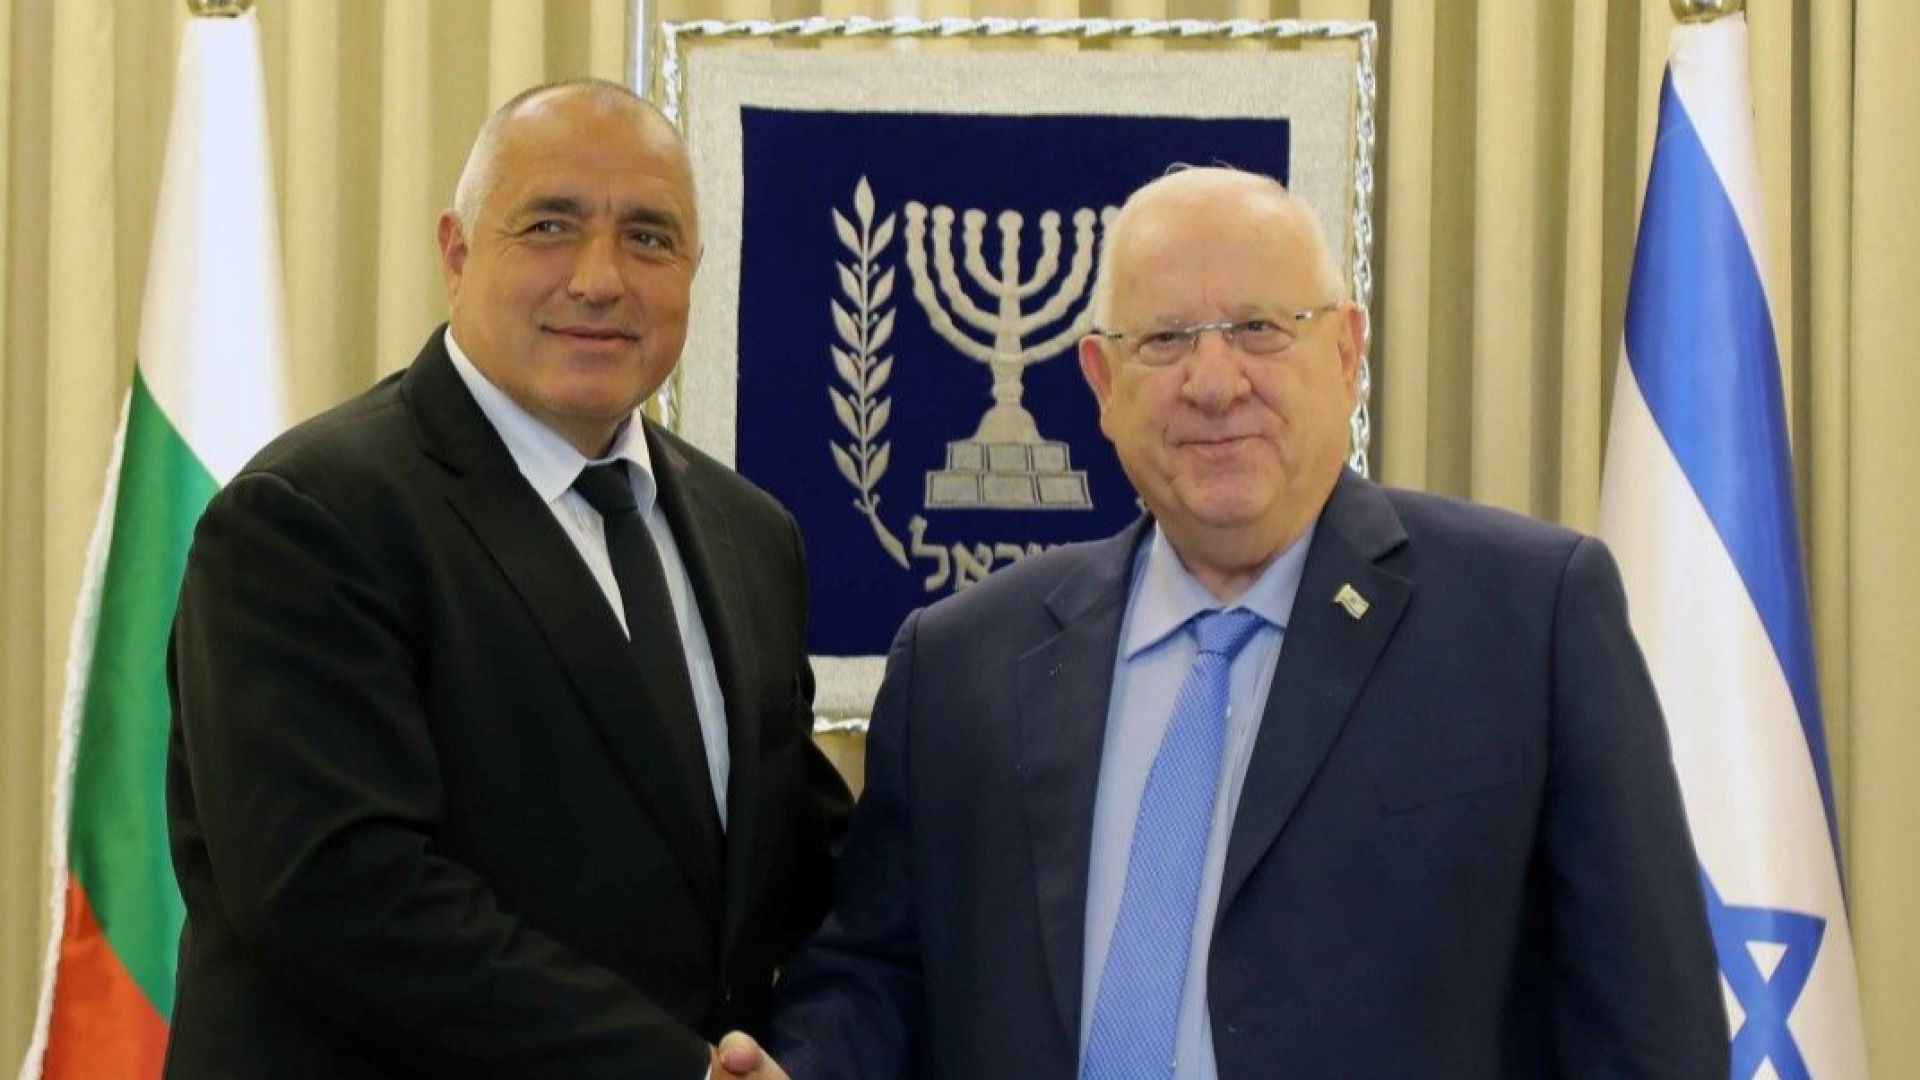 Бойко Борисов: Израел е приятел, на който можем да разчитаме